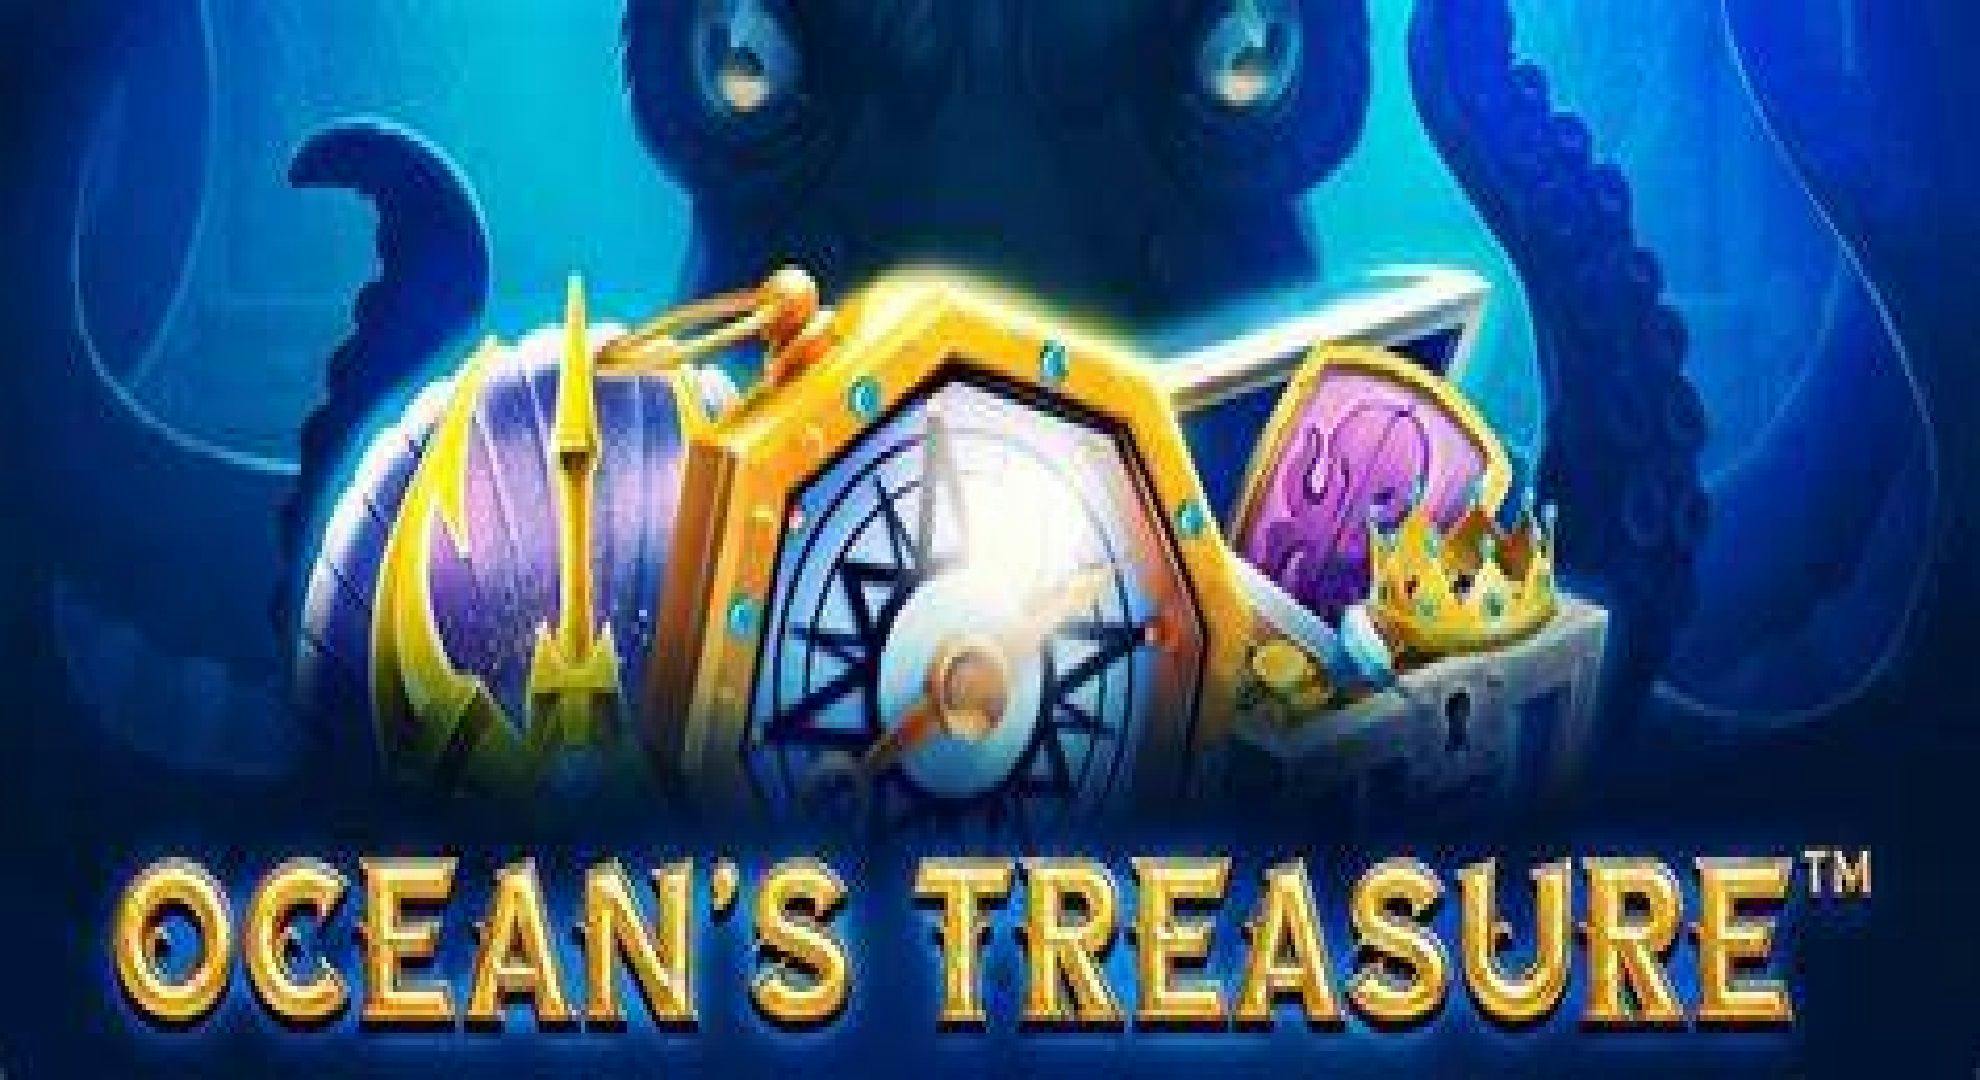 Ocean's Treasure Slot Online Free Play